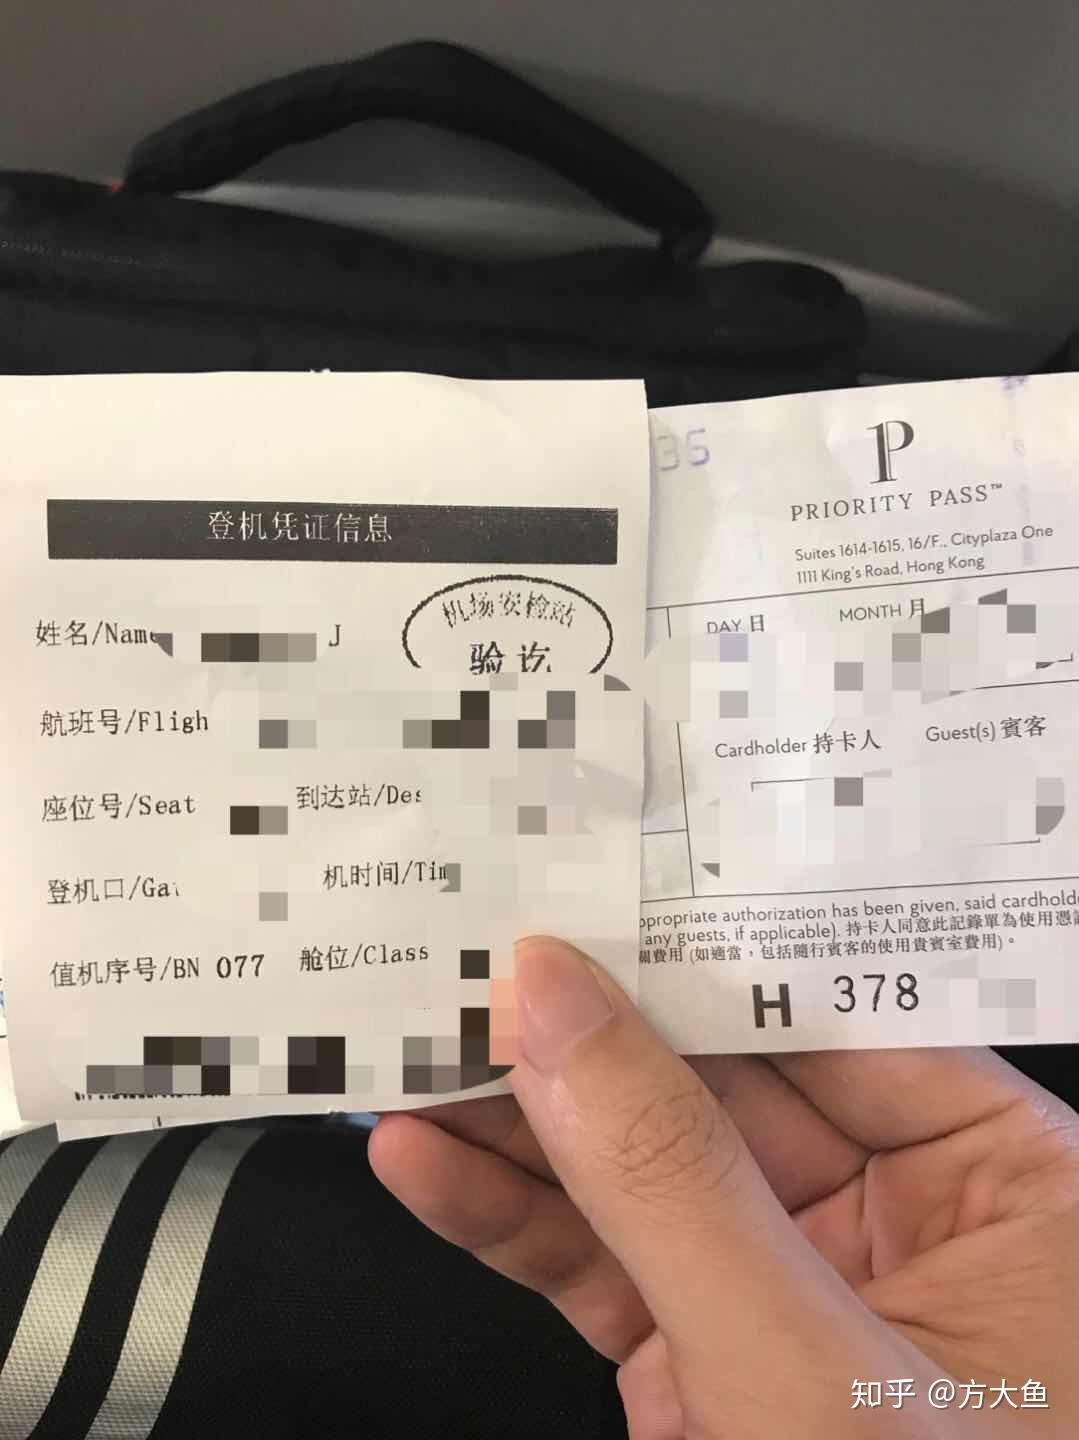 机票上的标识的含义-飞机票登机牌上标注的“常旅客”是什么意思？